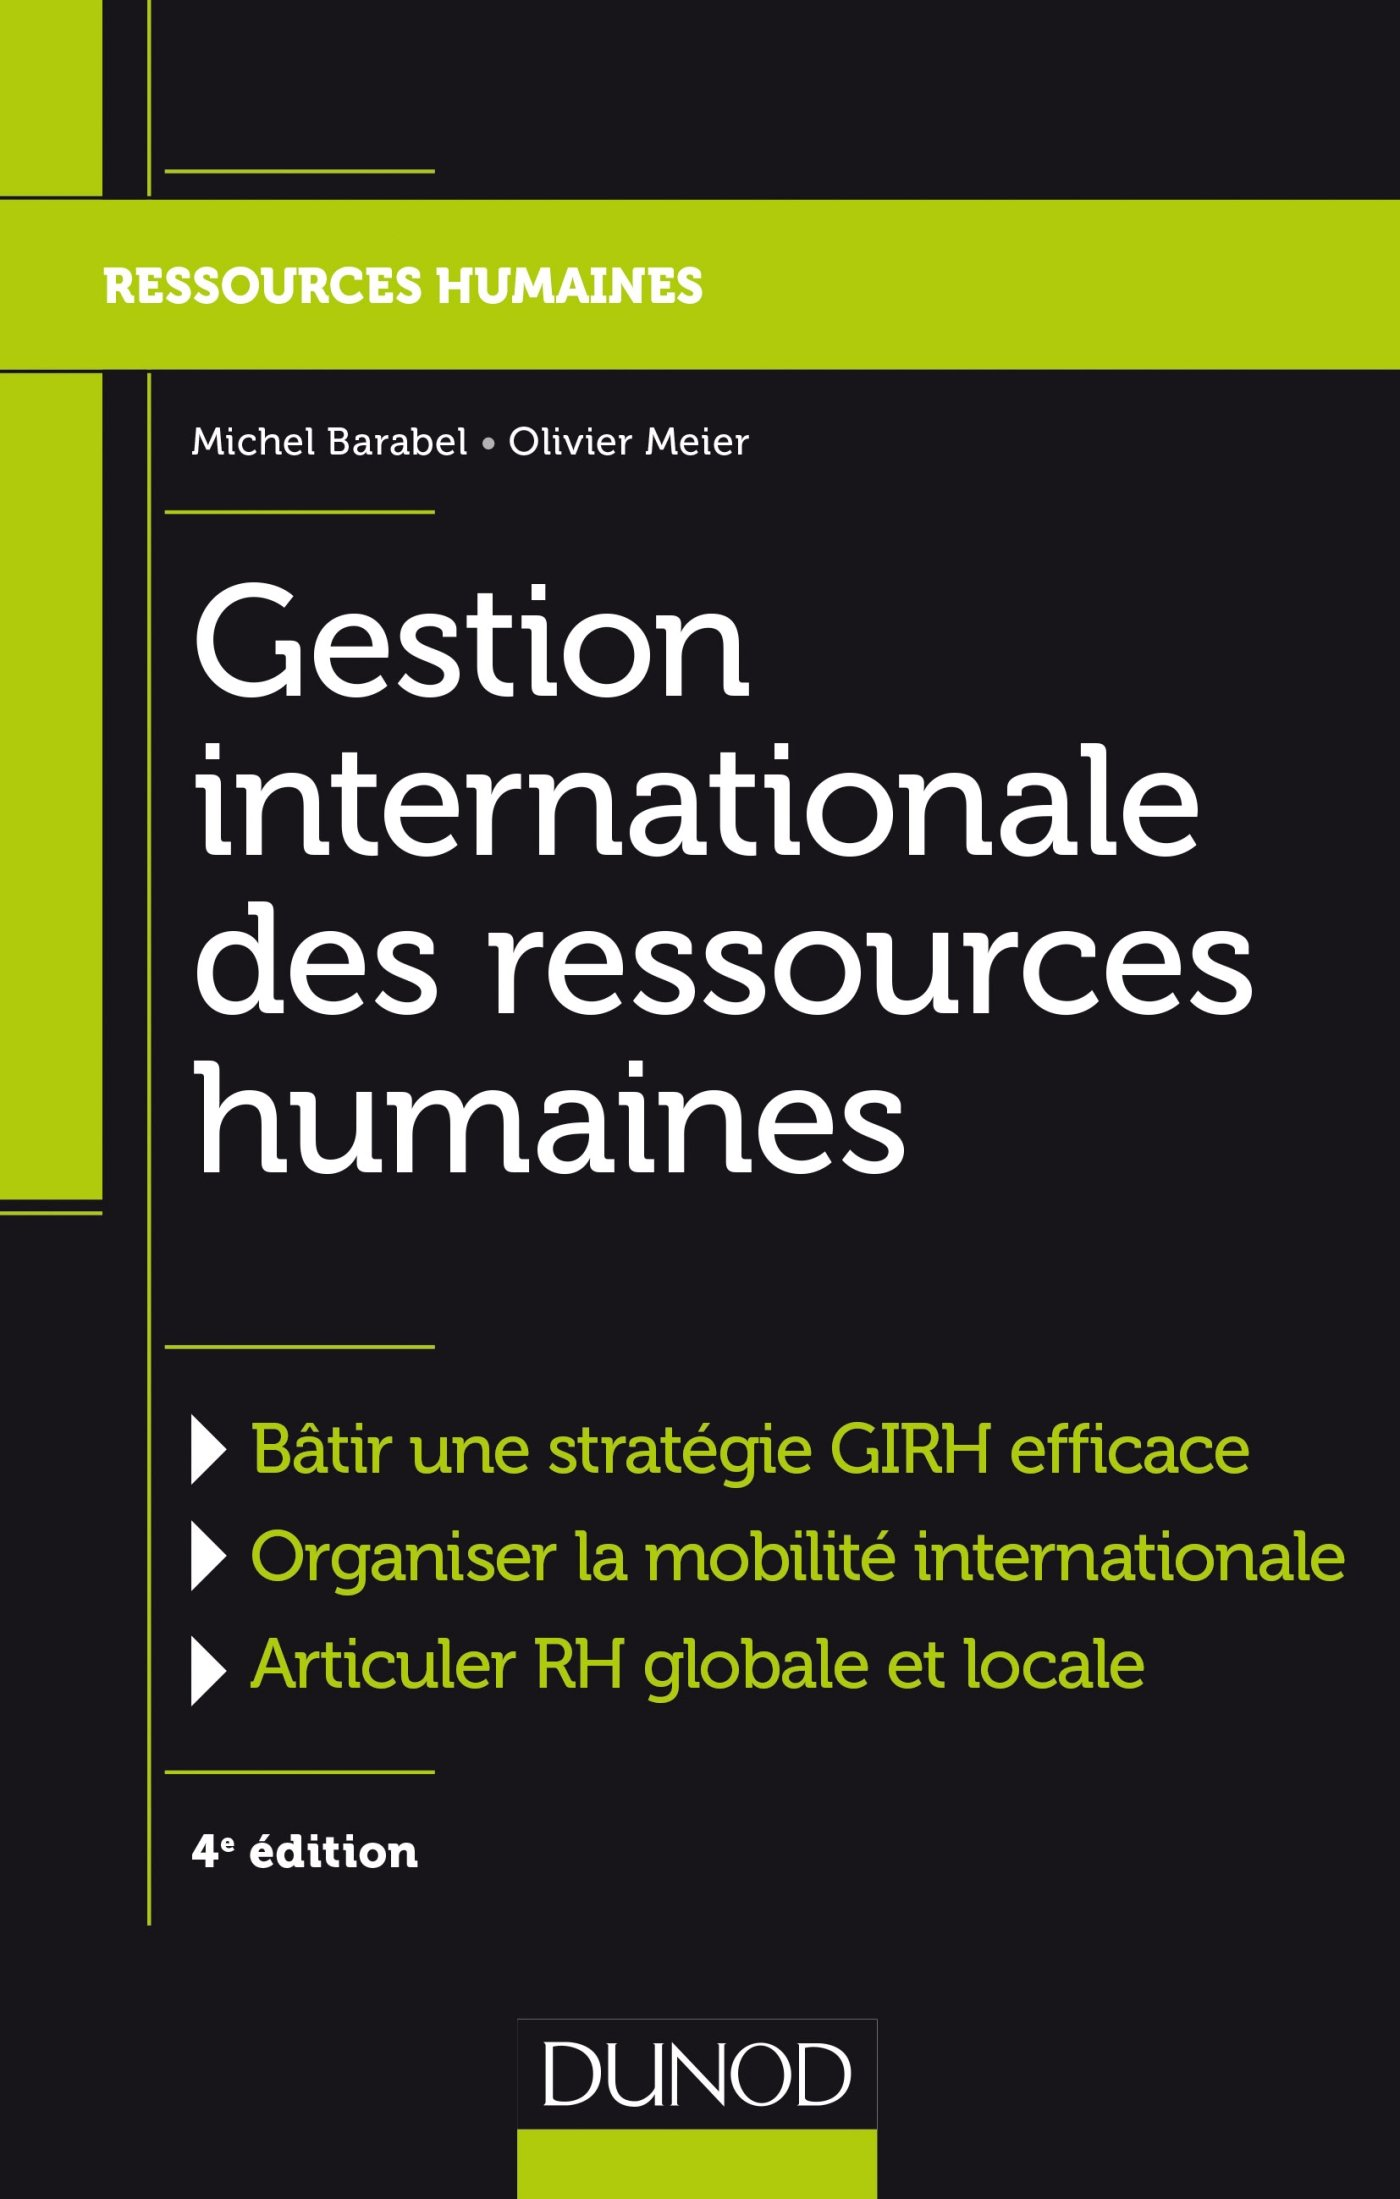 Gestion internationale des ressources humaines - Livre et ebook Ressources humaines de Michel Barabel capture d'écran